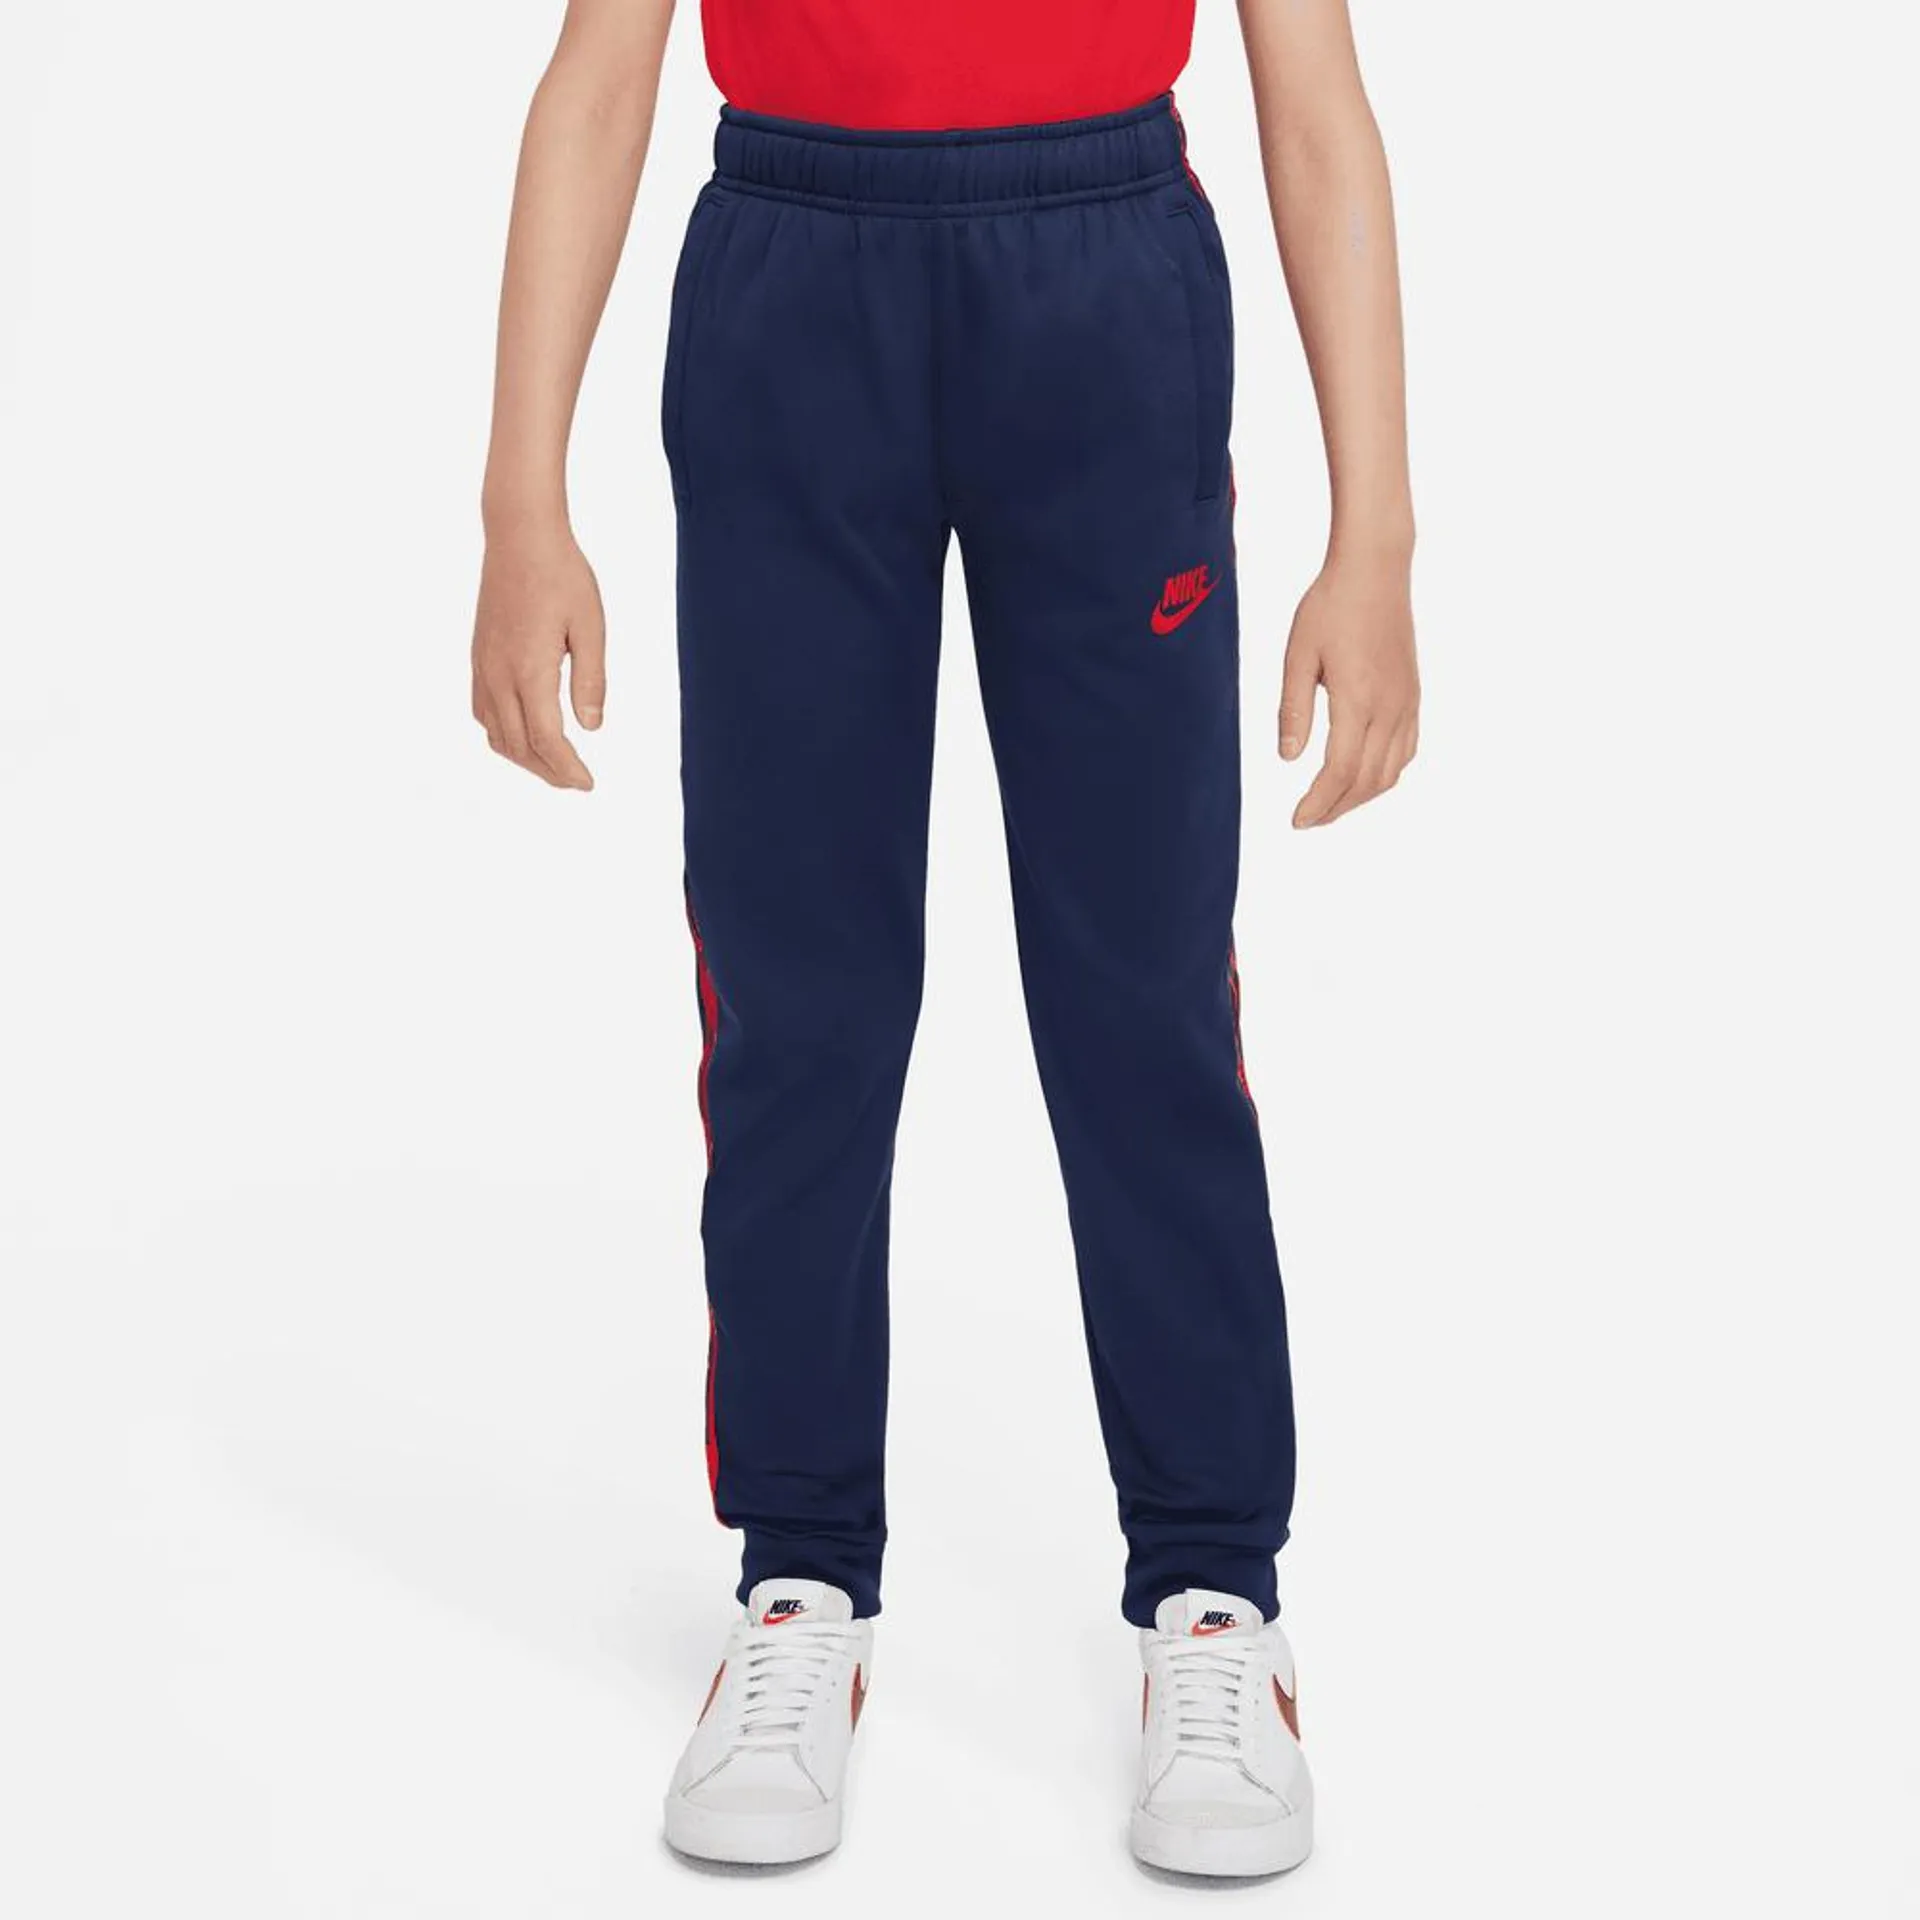 Pantalon Nike Sportswear Junior Repeat - Bleu/Rouge